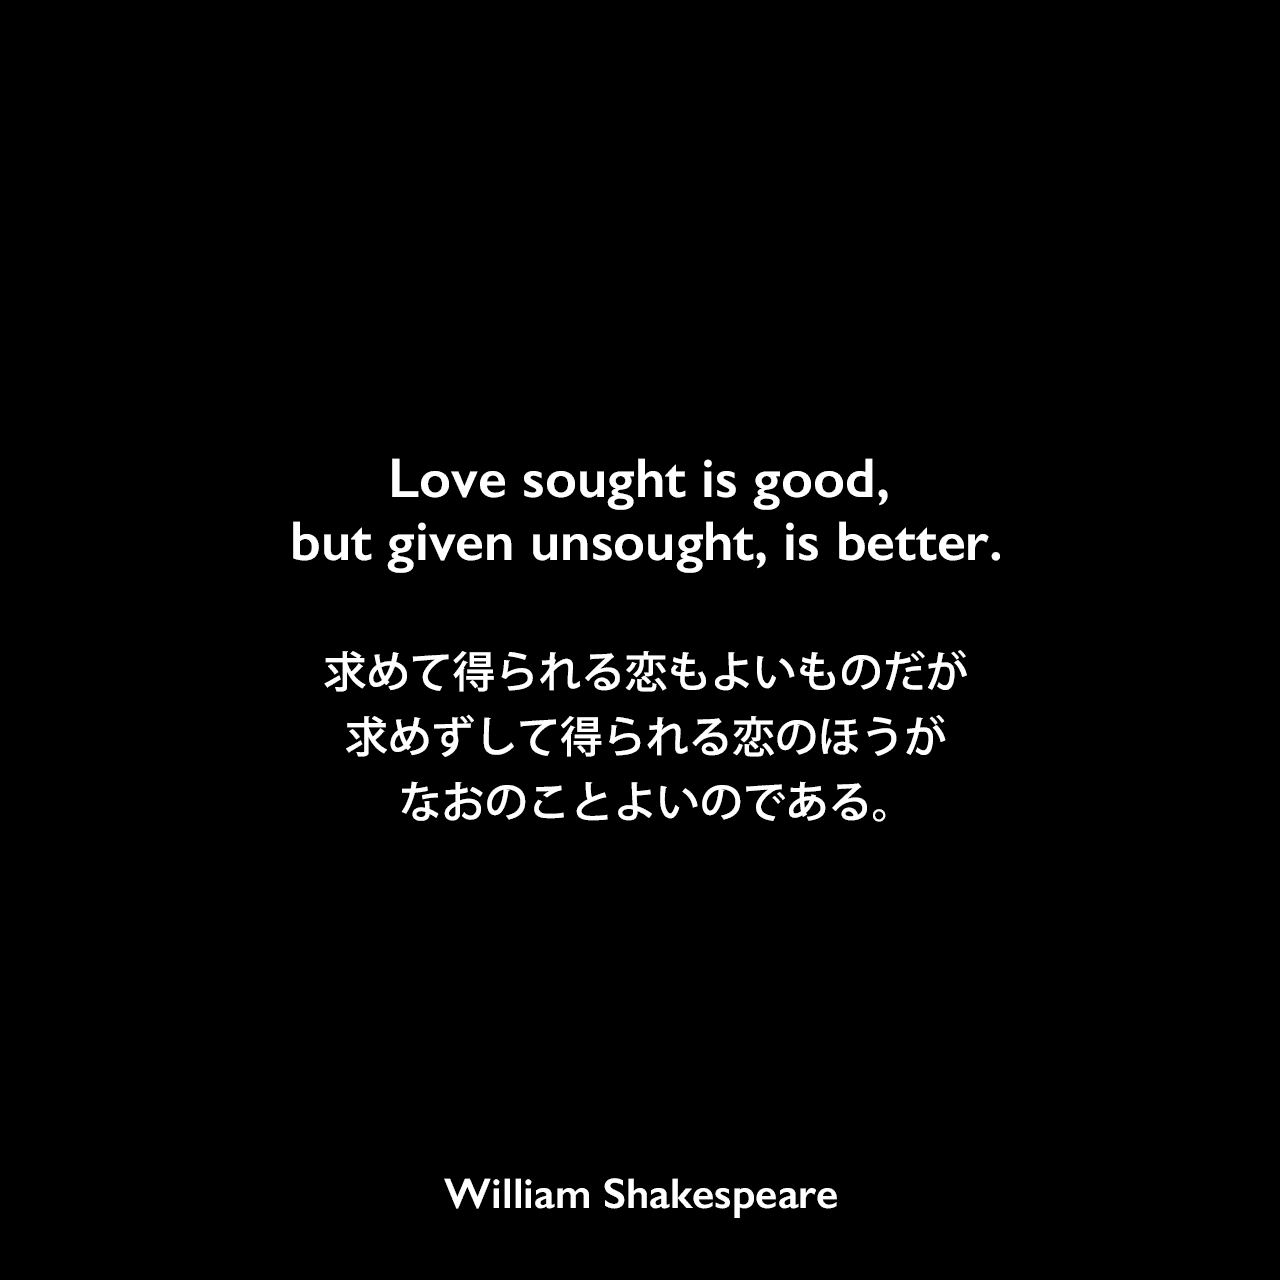 Love sought is good, but given unsought, is better.求めて得られる恋もよいものだが、求めずして得られる恋のほうが、なおのことよいのである。William Shakespeare